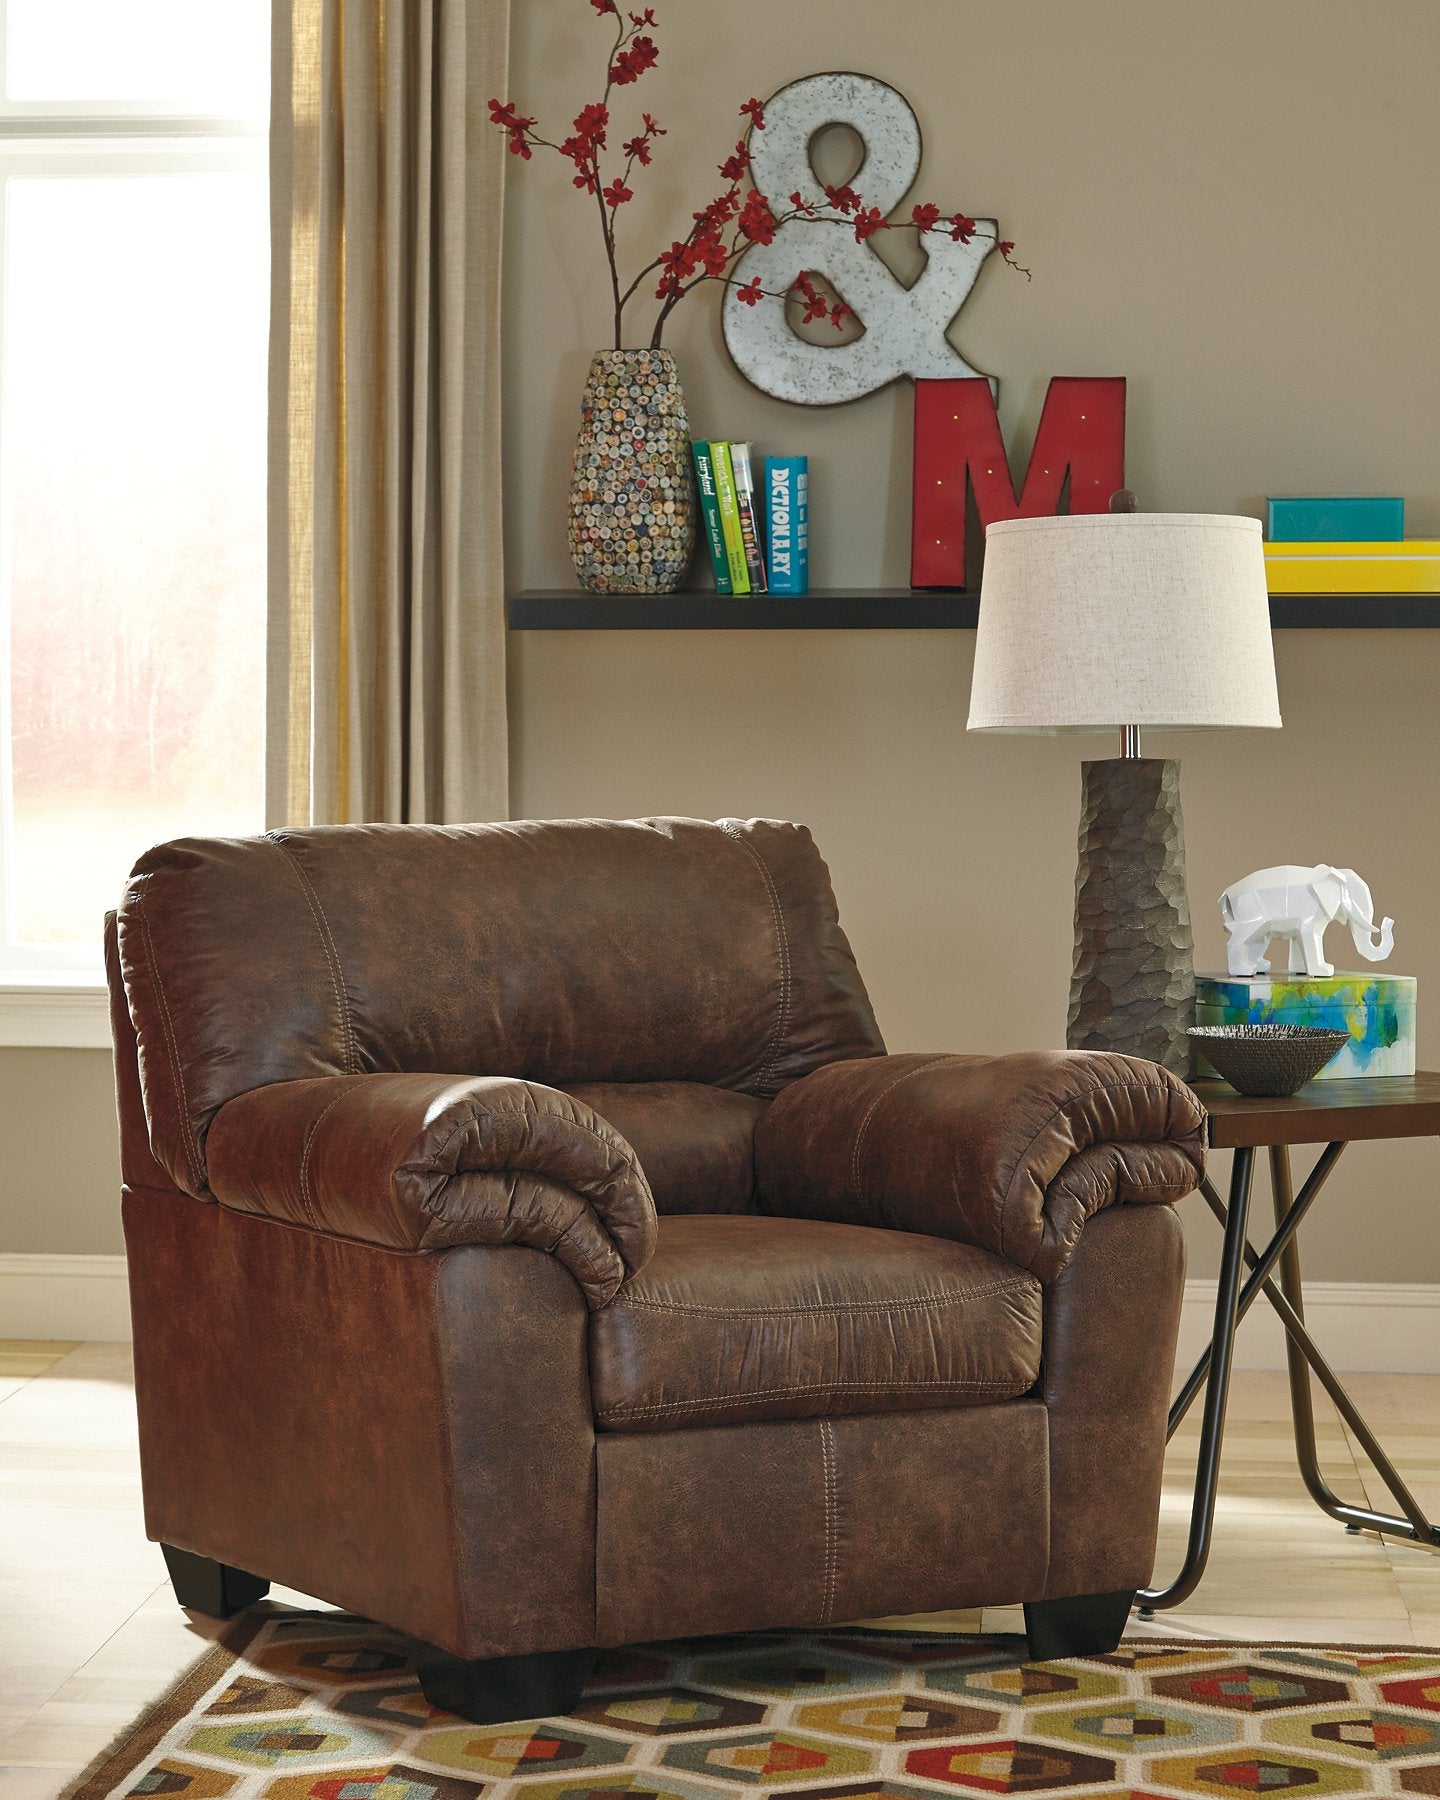 Bladen Chair - Half Price Furniture